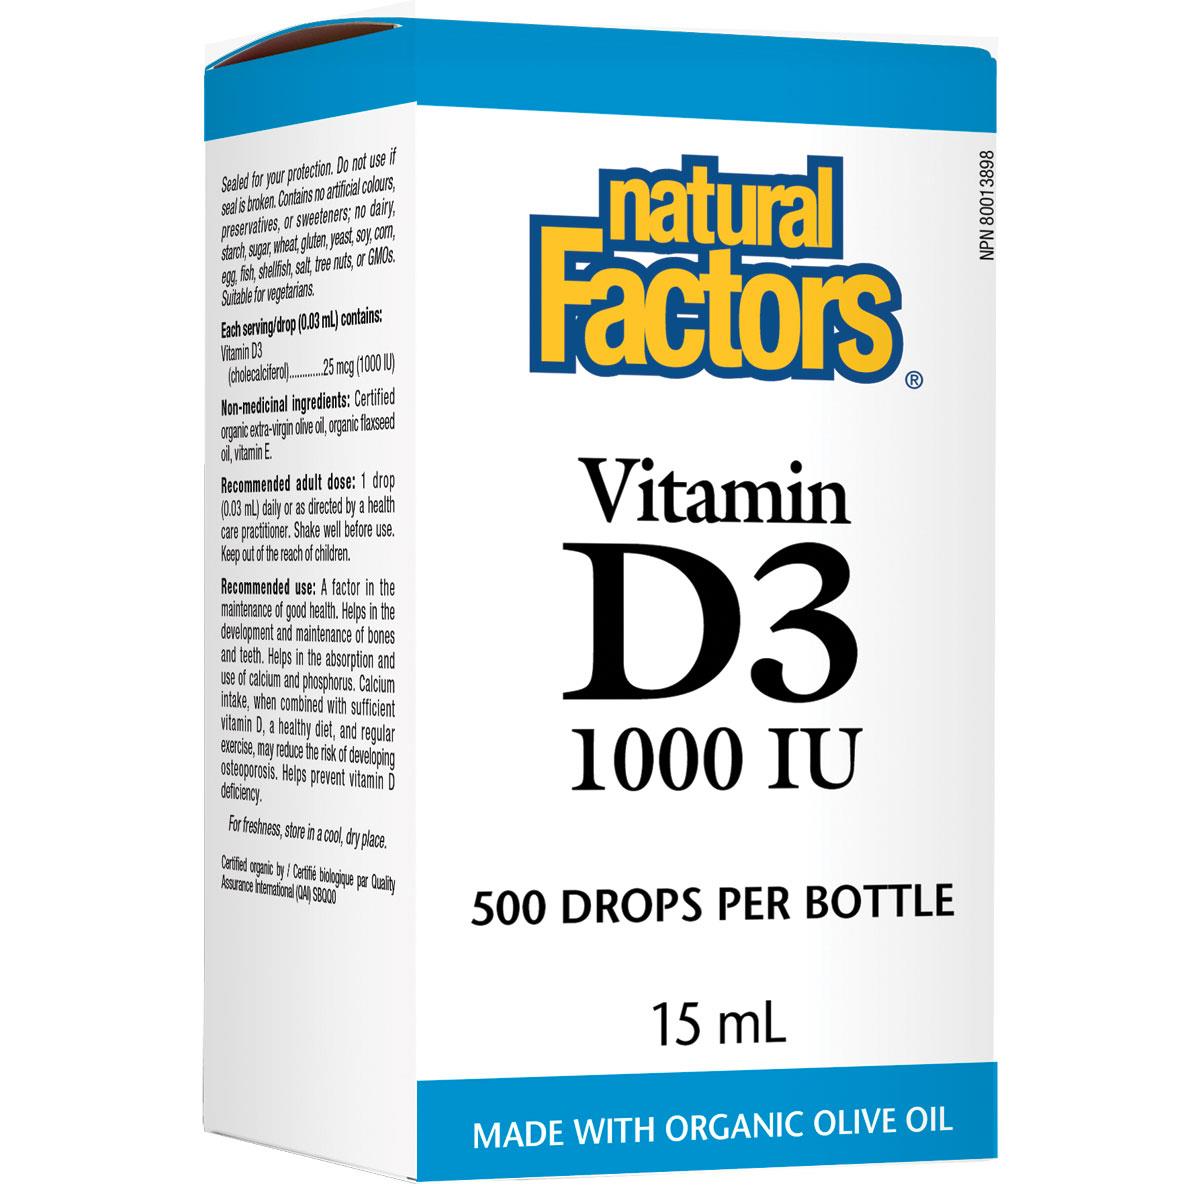 Natural Factors Vitamin D3 Drops, 1000 IU, 15 ML